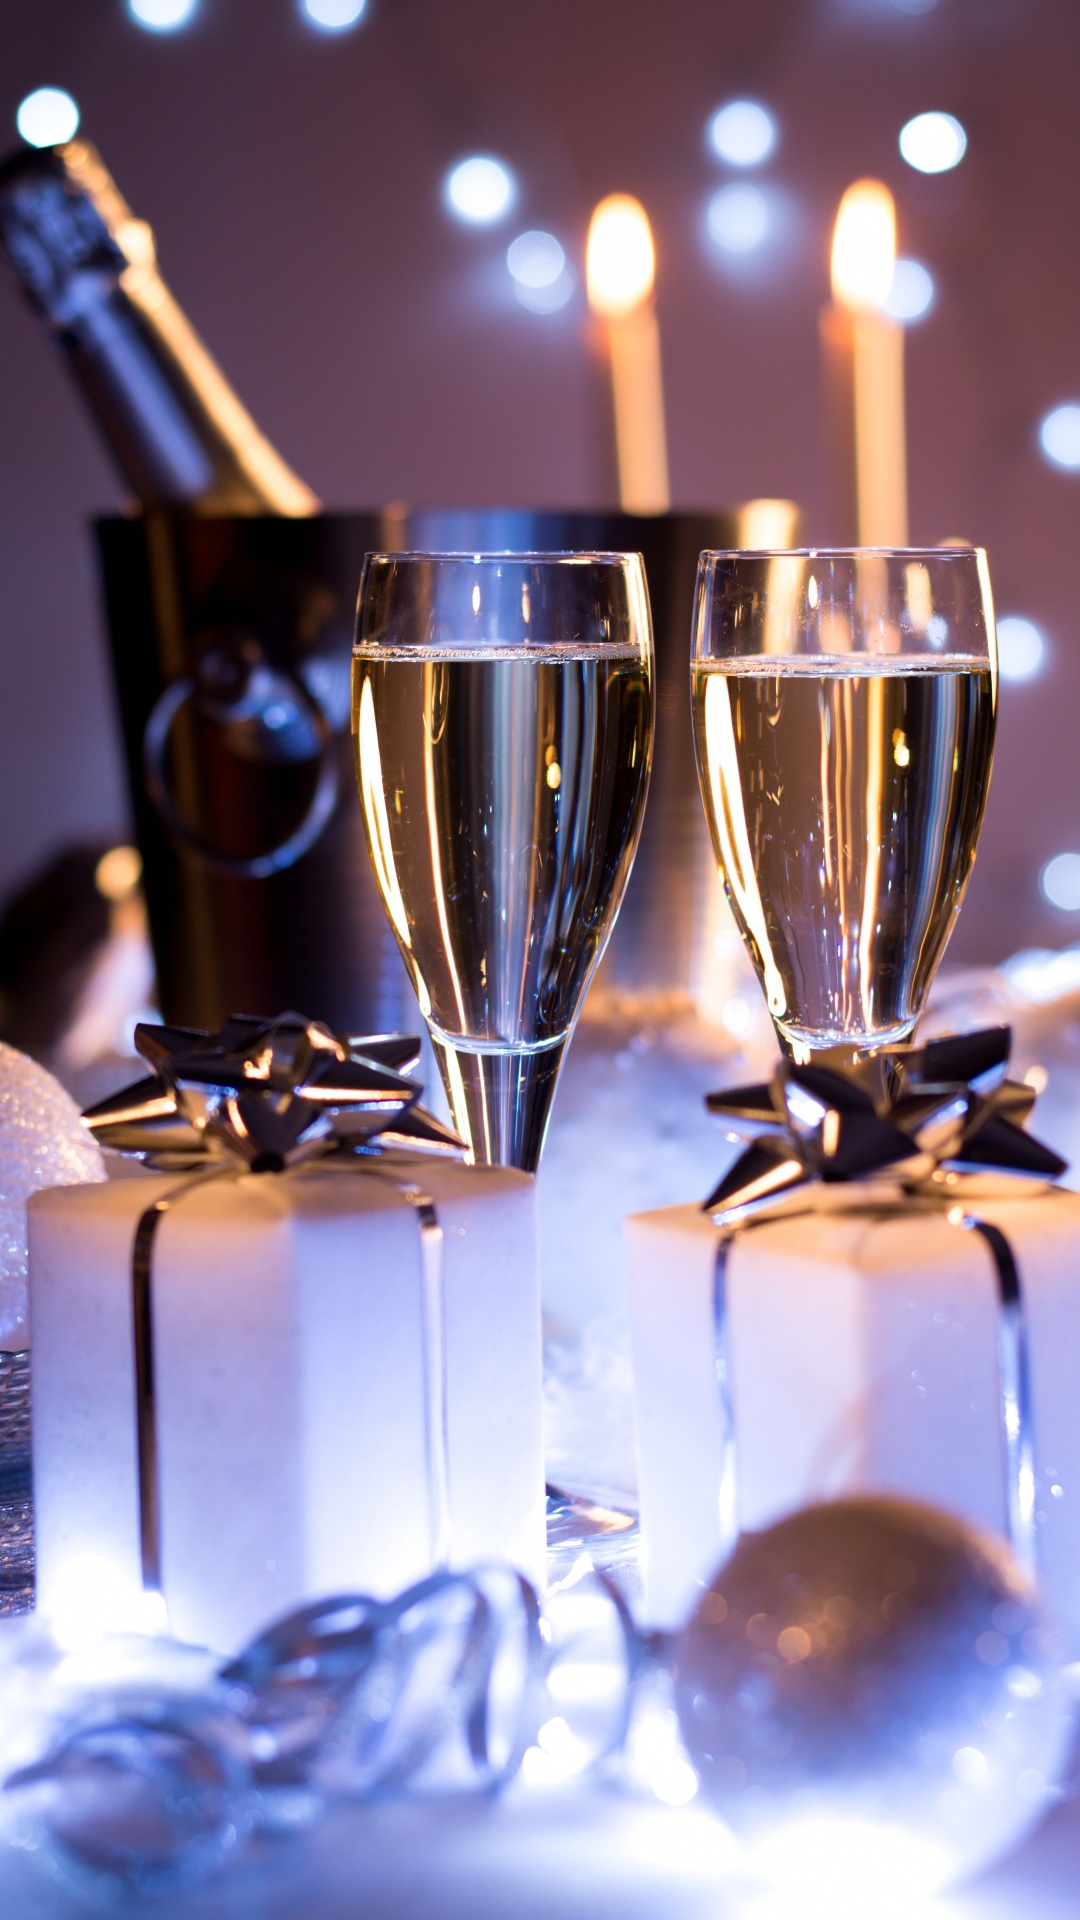 香槟, 葡萄酒, 新年前夕, 新的一年, 仍然生活 壁纸 1080x1920 允许